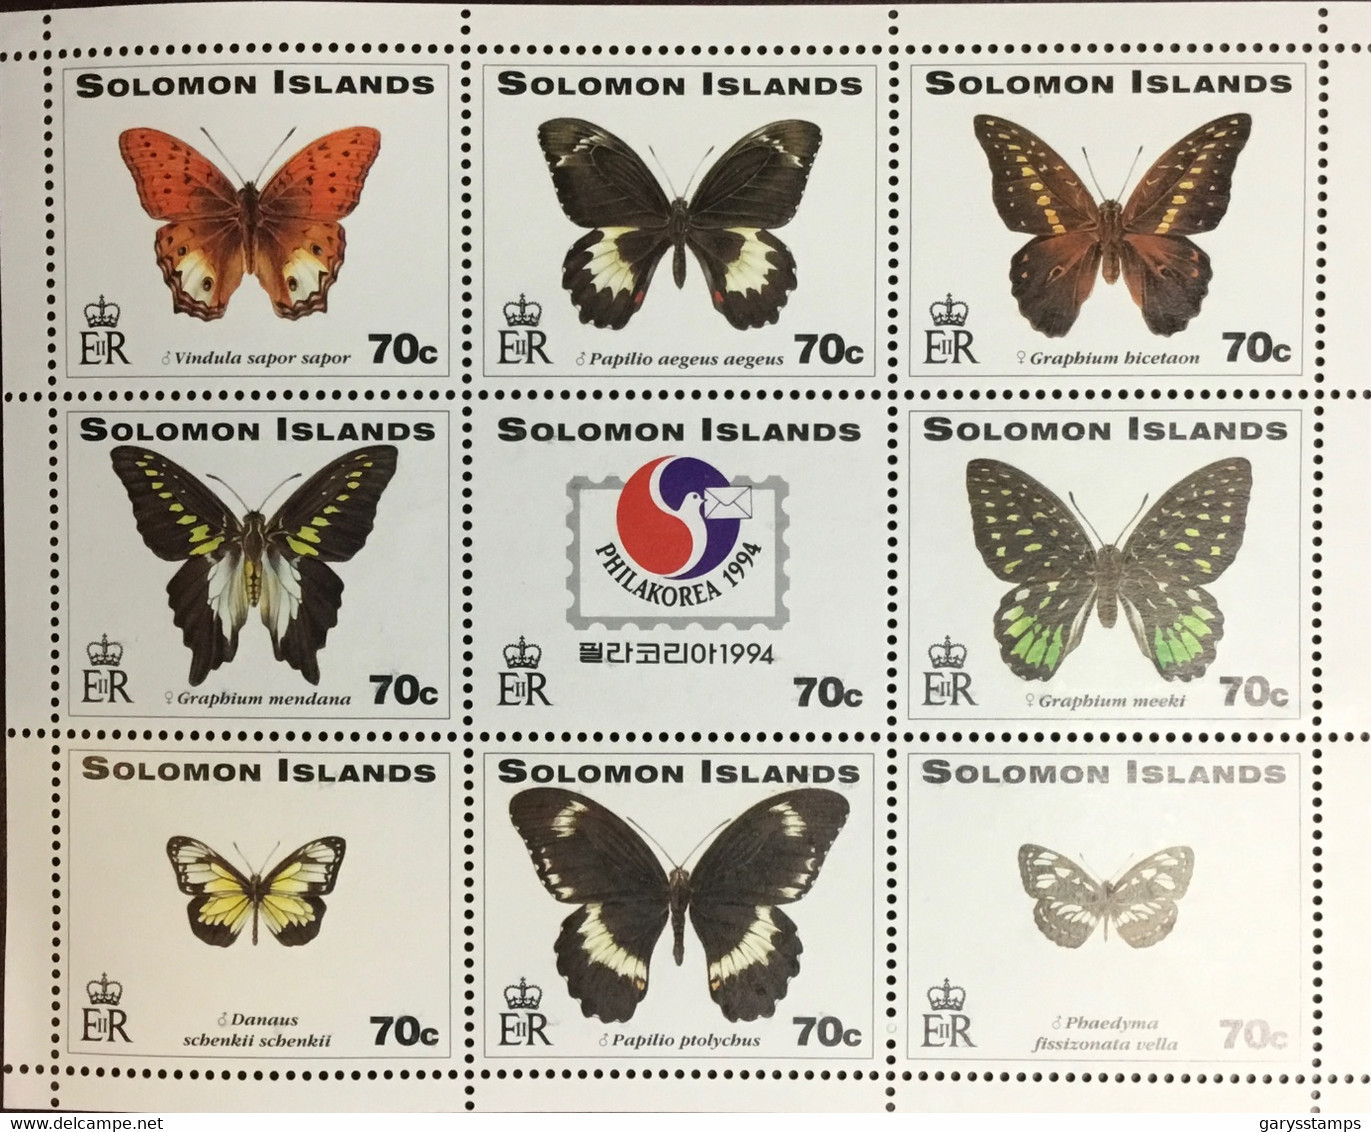 Solomon Islands 1994 Philakorea Butterflies Sheetlet MNH - Butterflies